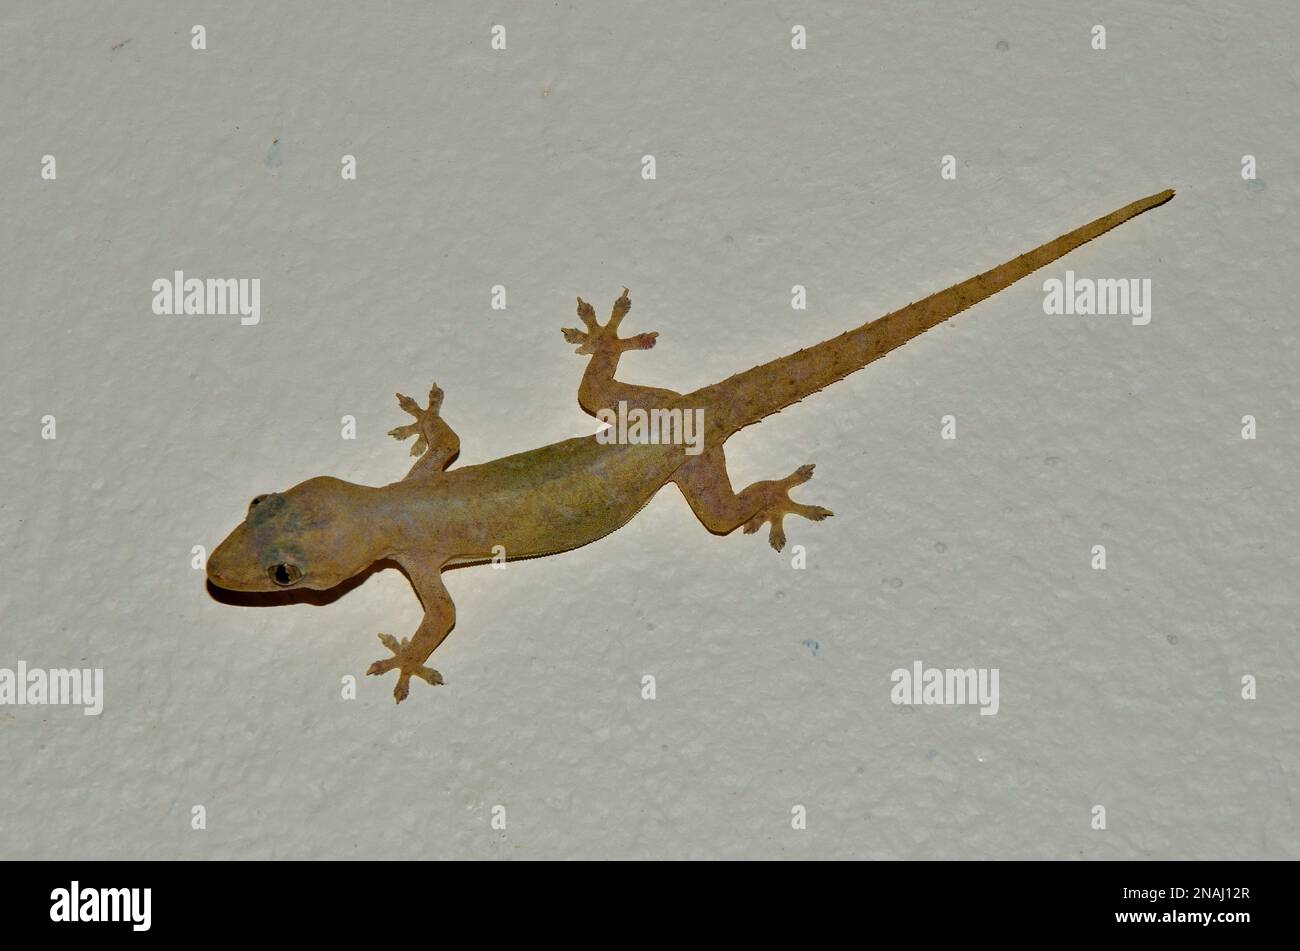 Hemidactylus frenatus, Asiatischer Hausgecko, Gewöhnlicher Halbfinger, common house gecko, Embudu, Malediven, maldives Stock Photo